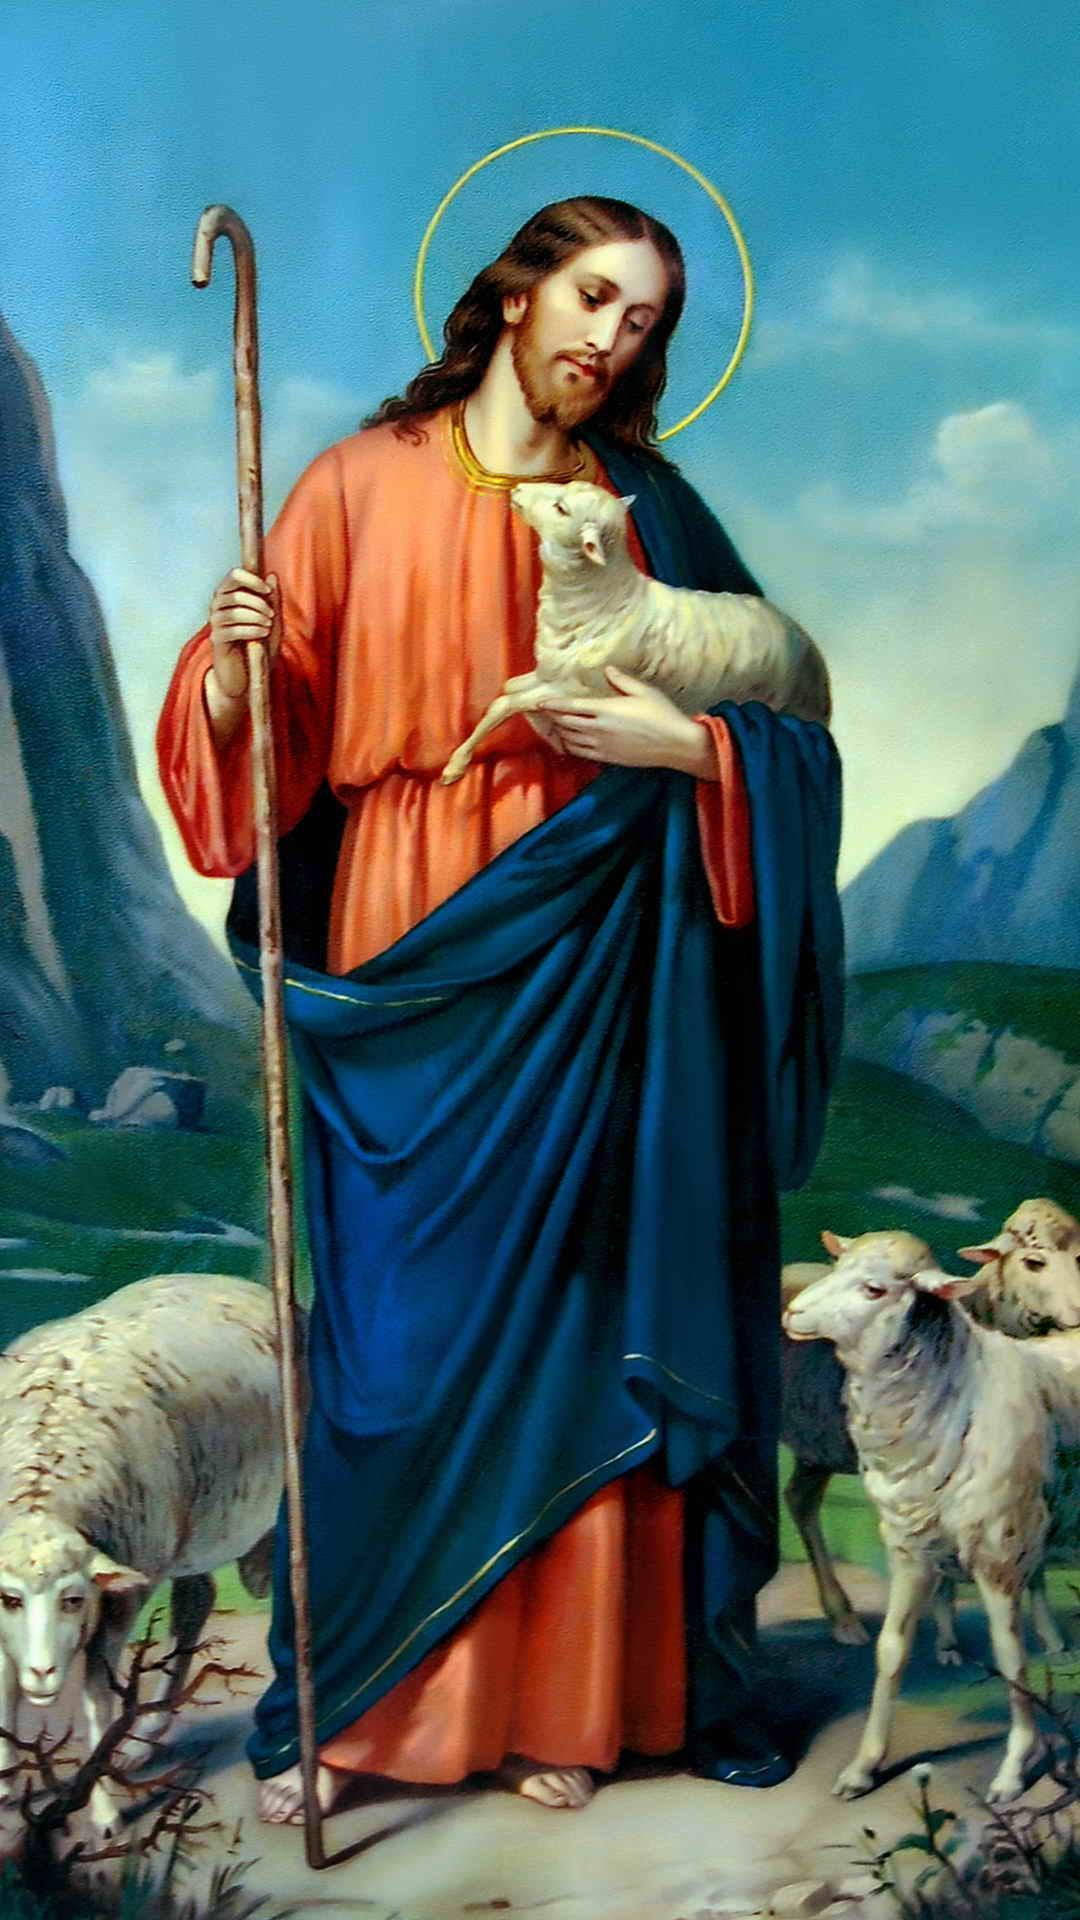 lamb of god resolution wallpaper